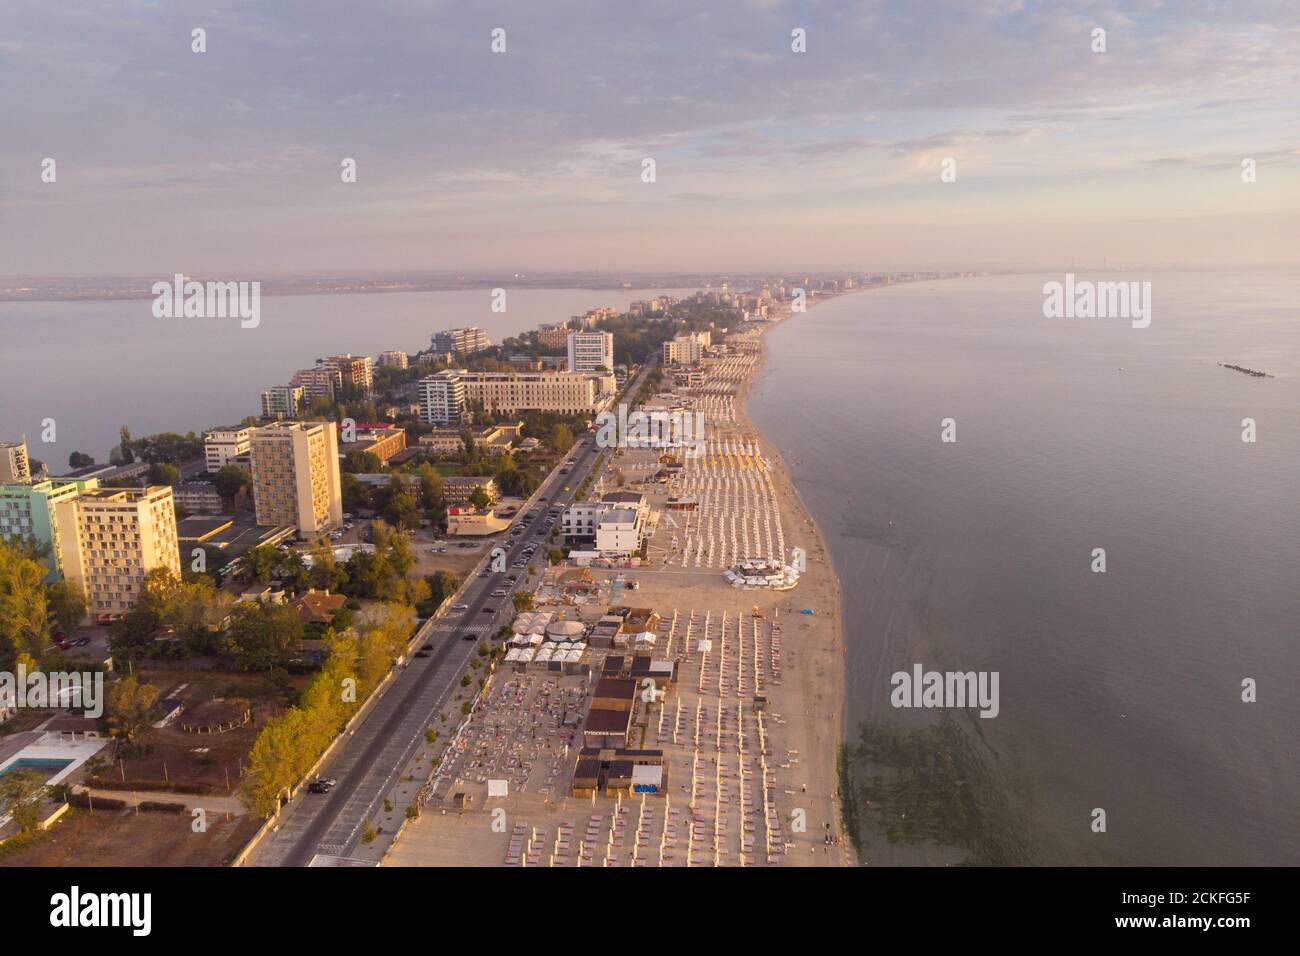 Summer sunrise over Mamaia coastline, at the Black Sea, Romania Stock Photo